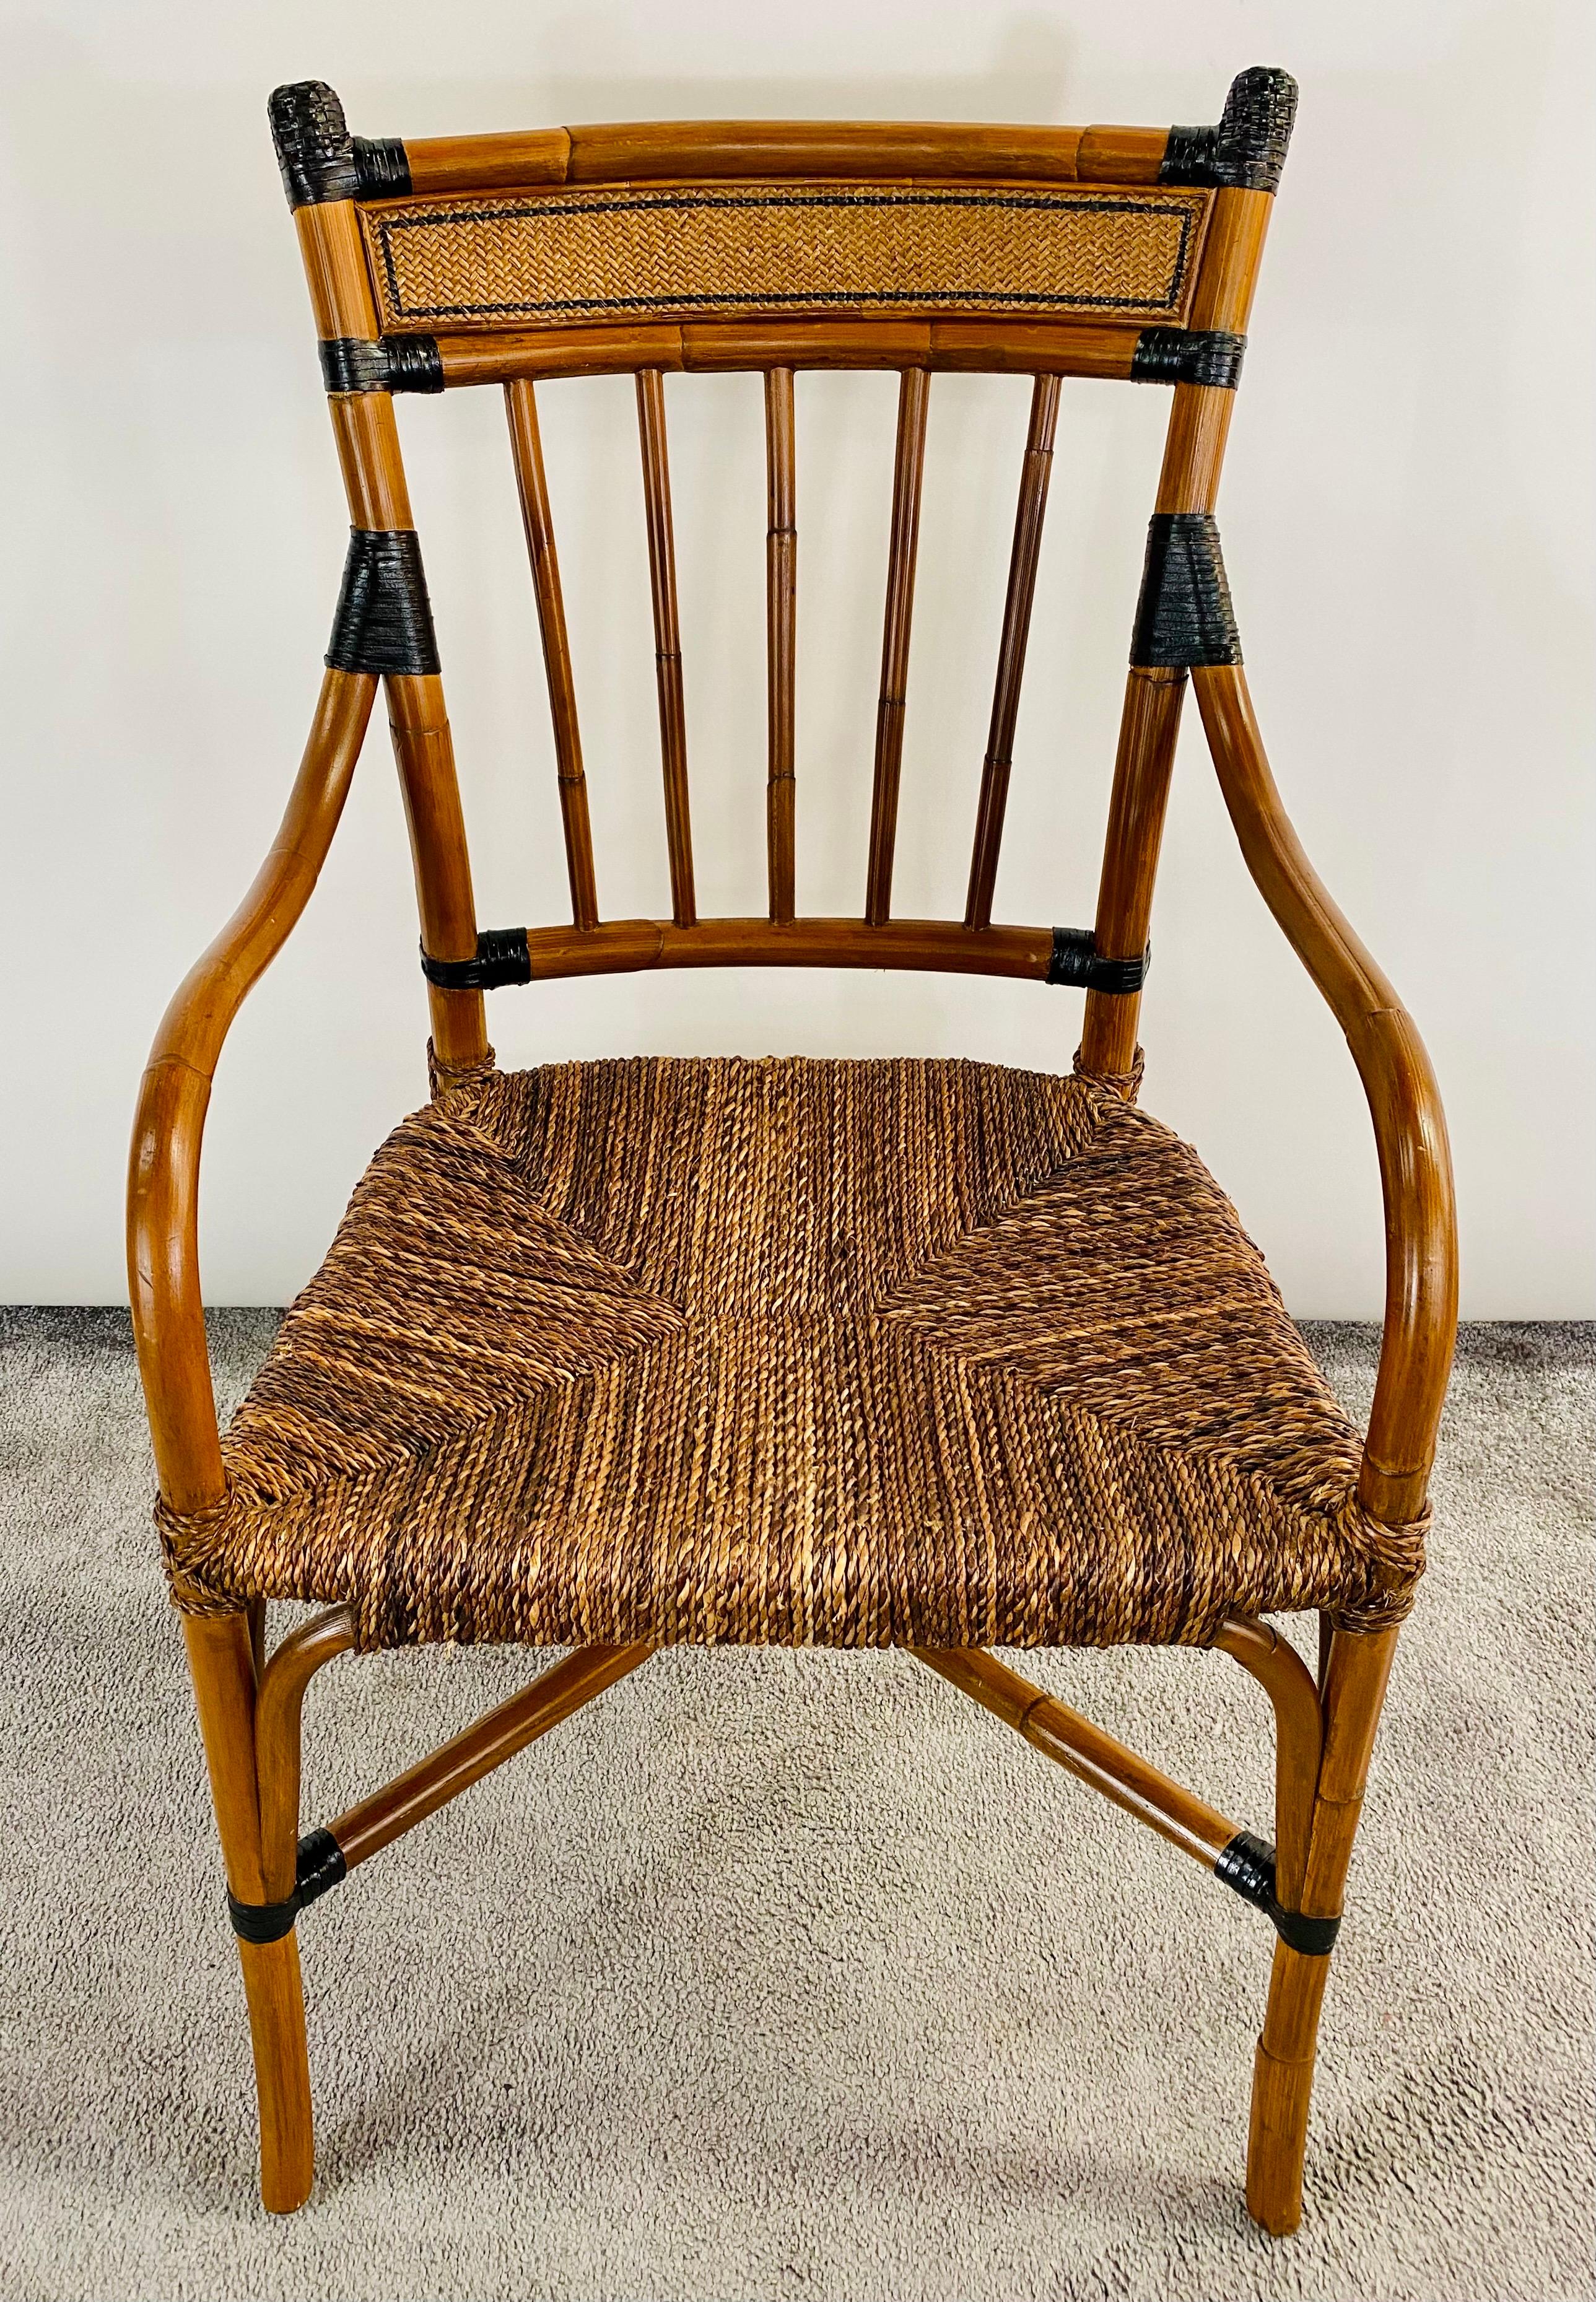 Ein hochwertiger Mid Century Boho Chic Sessel aus Bambus und Rattan. Der fein geschnitzte Stuhl hat geschwungene Armlehnen, die auf einem Rattansitz ruhen. Die Rückenlehne des Stuhls ist leicht gewölbt und bietet zusätzlichen Komfort. Sie ist mit